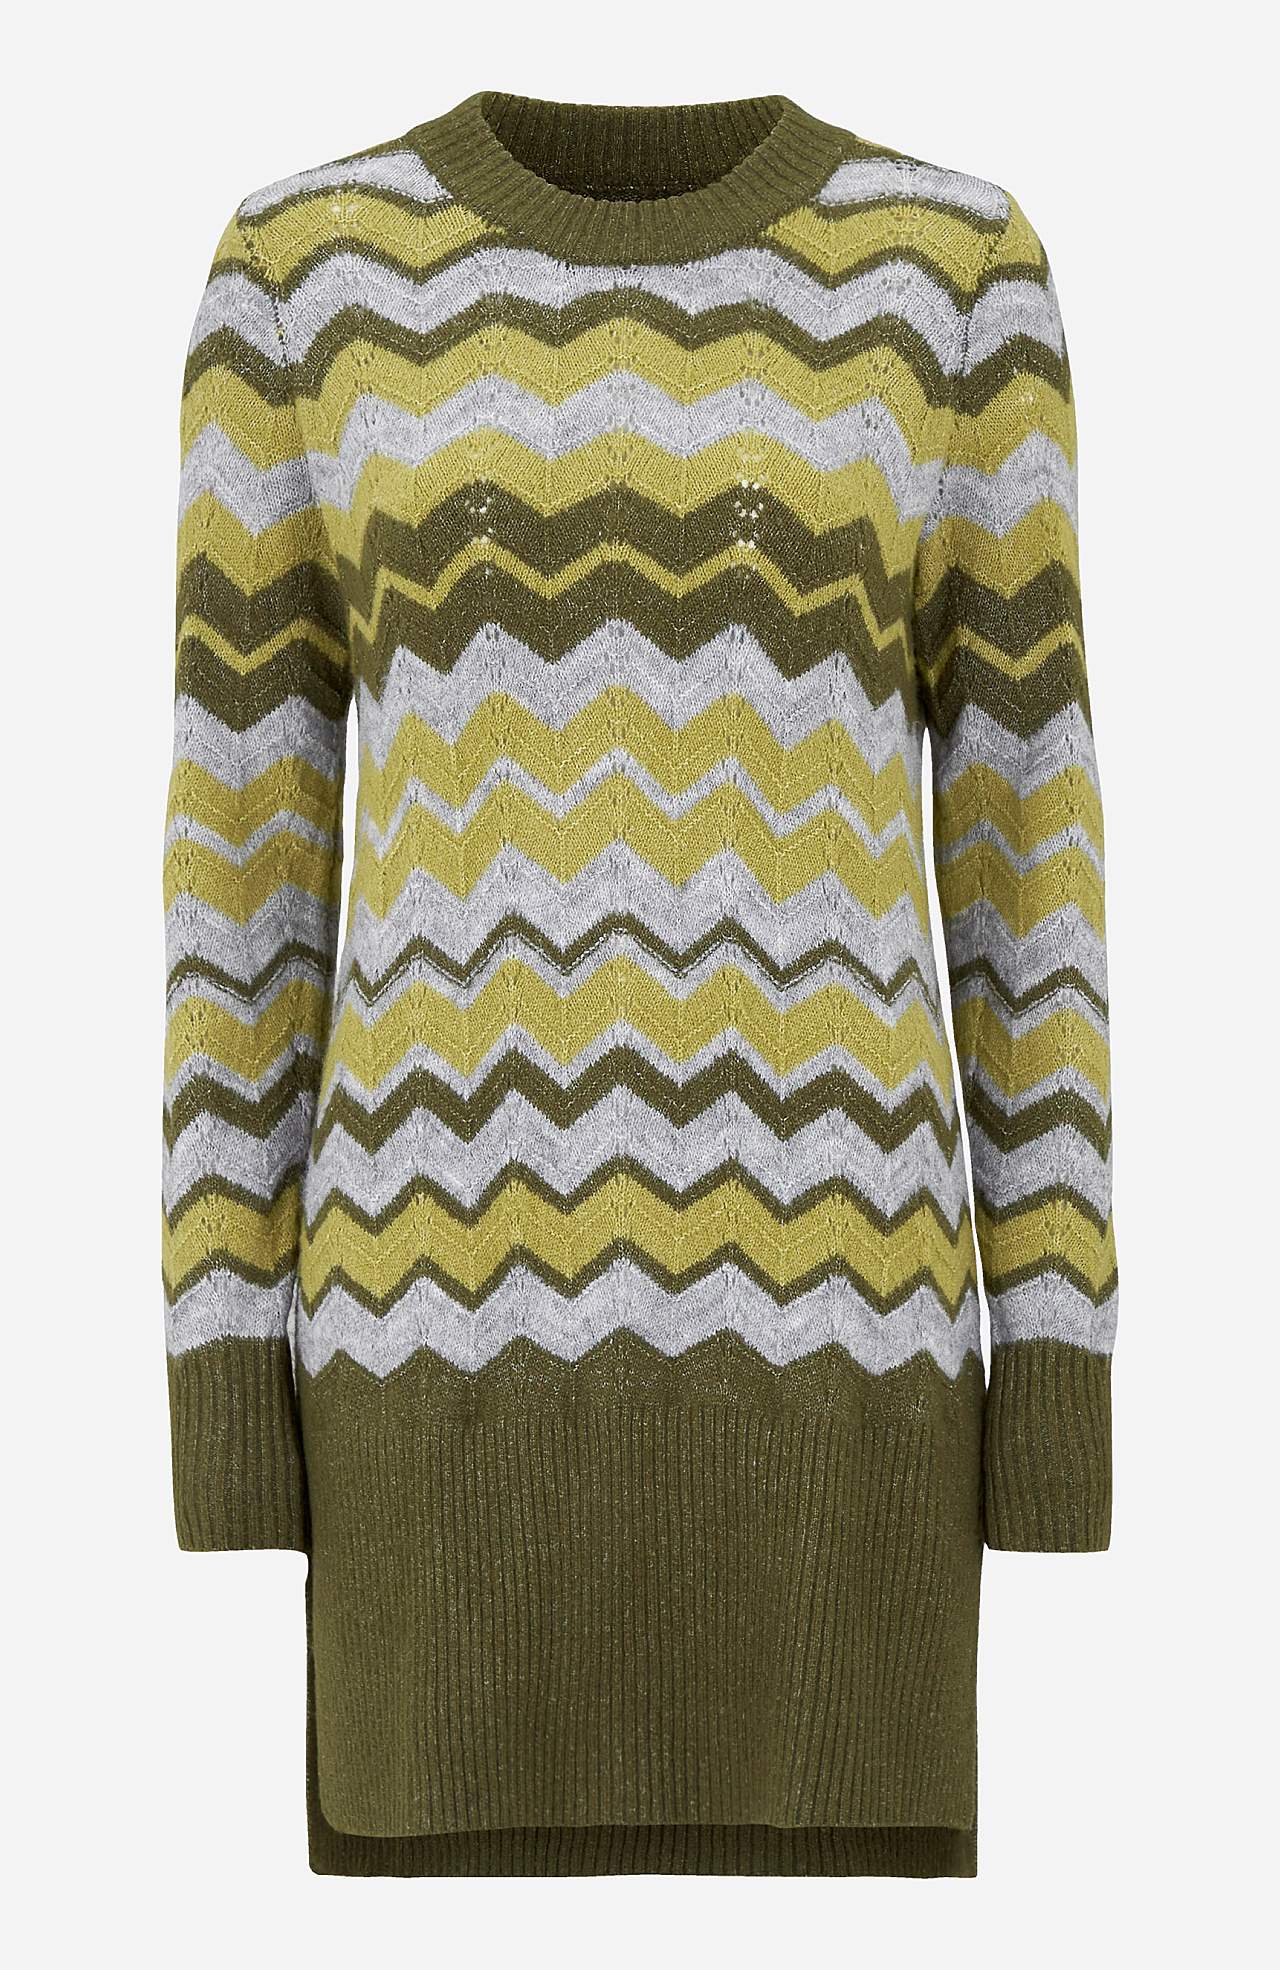 Pletený svetr s klikatým vzorem Agata